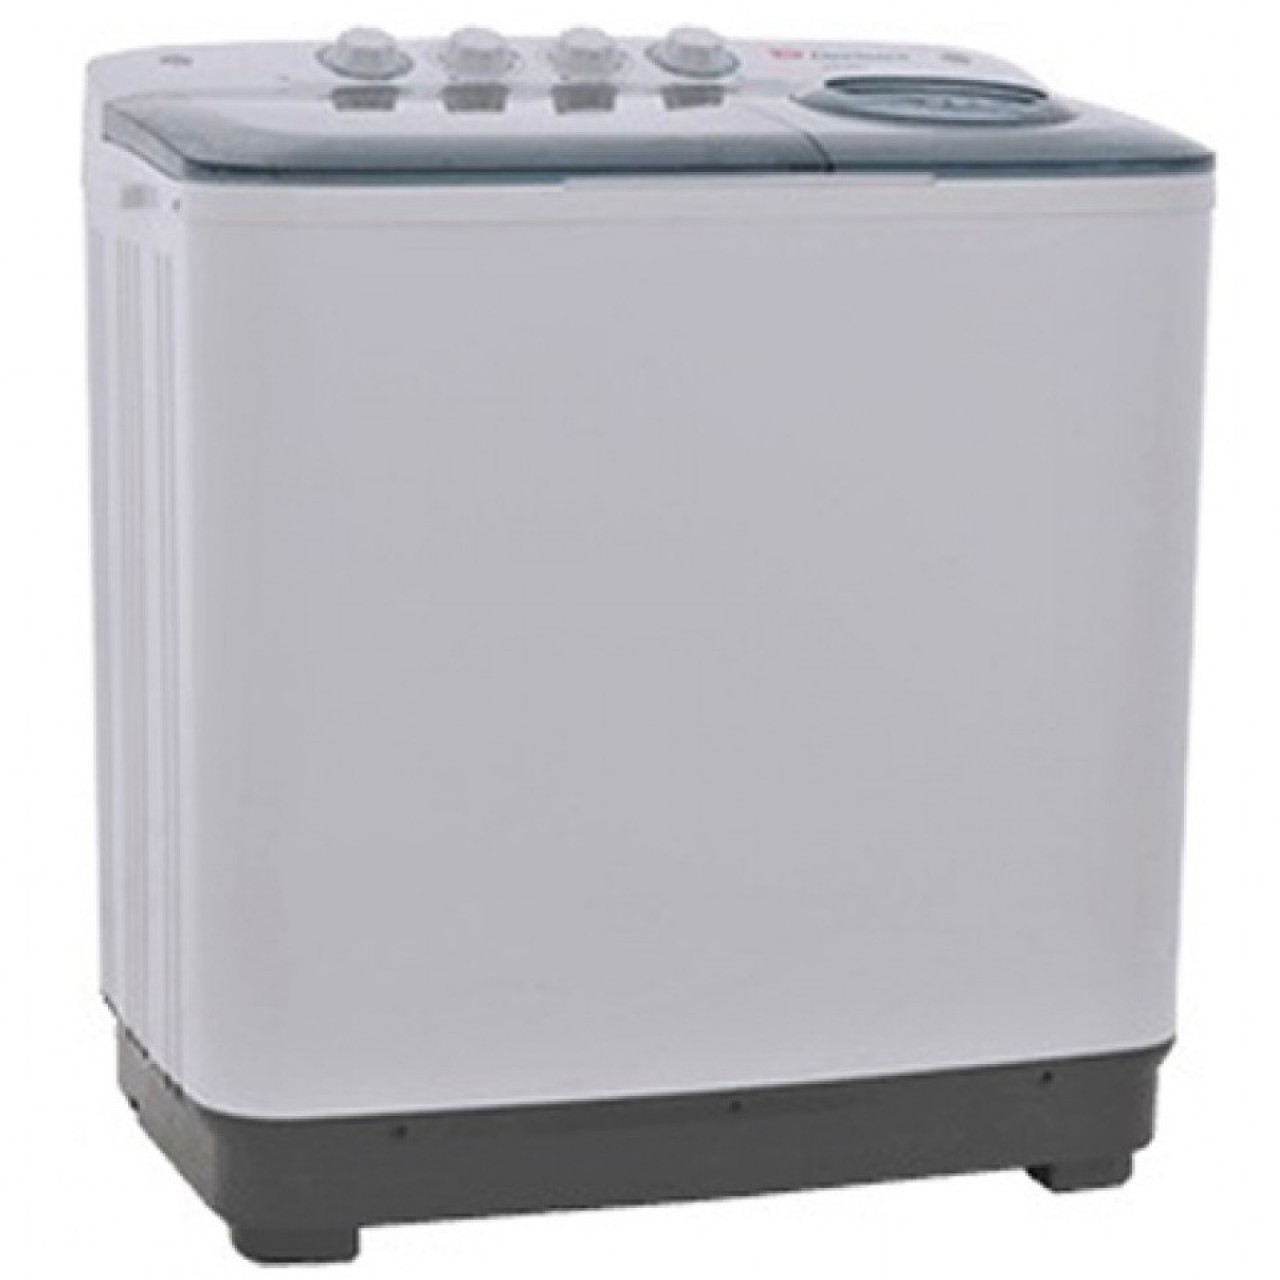 Dawlance DW-6500 Semi-Automatic Dual Tub Washing Machine - Capacity 8KG